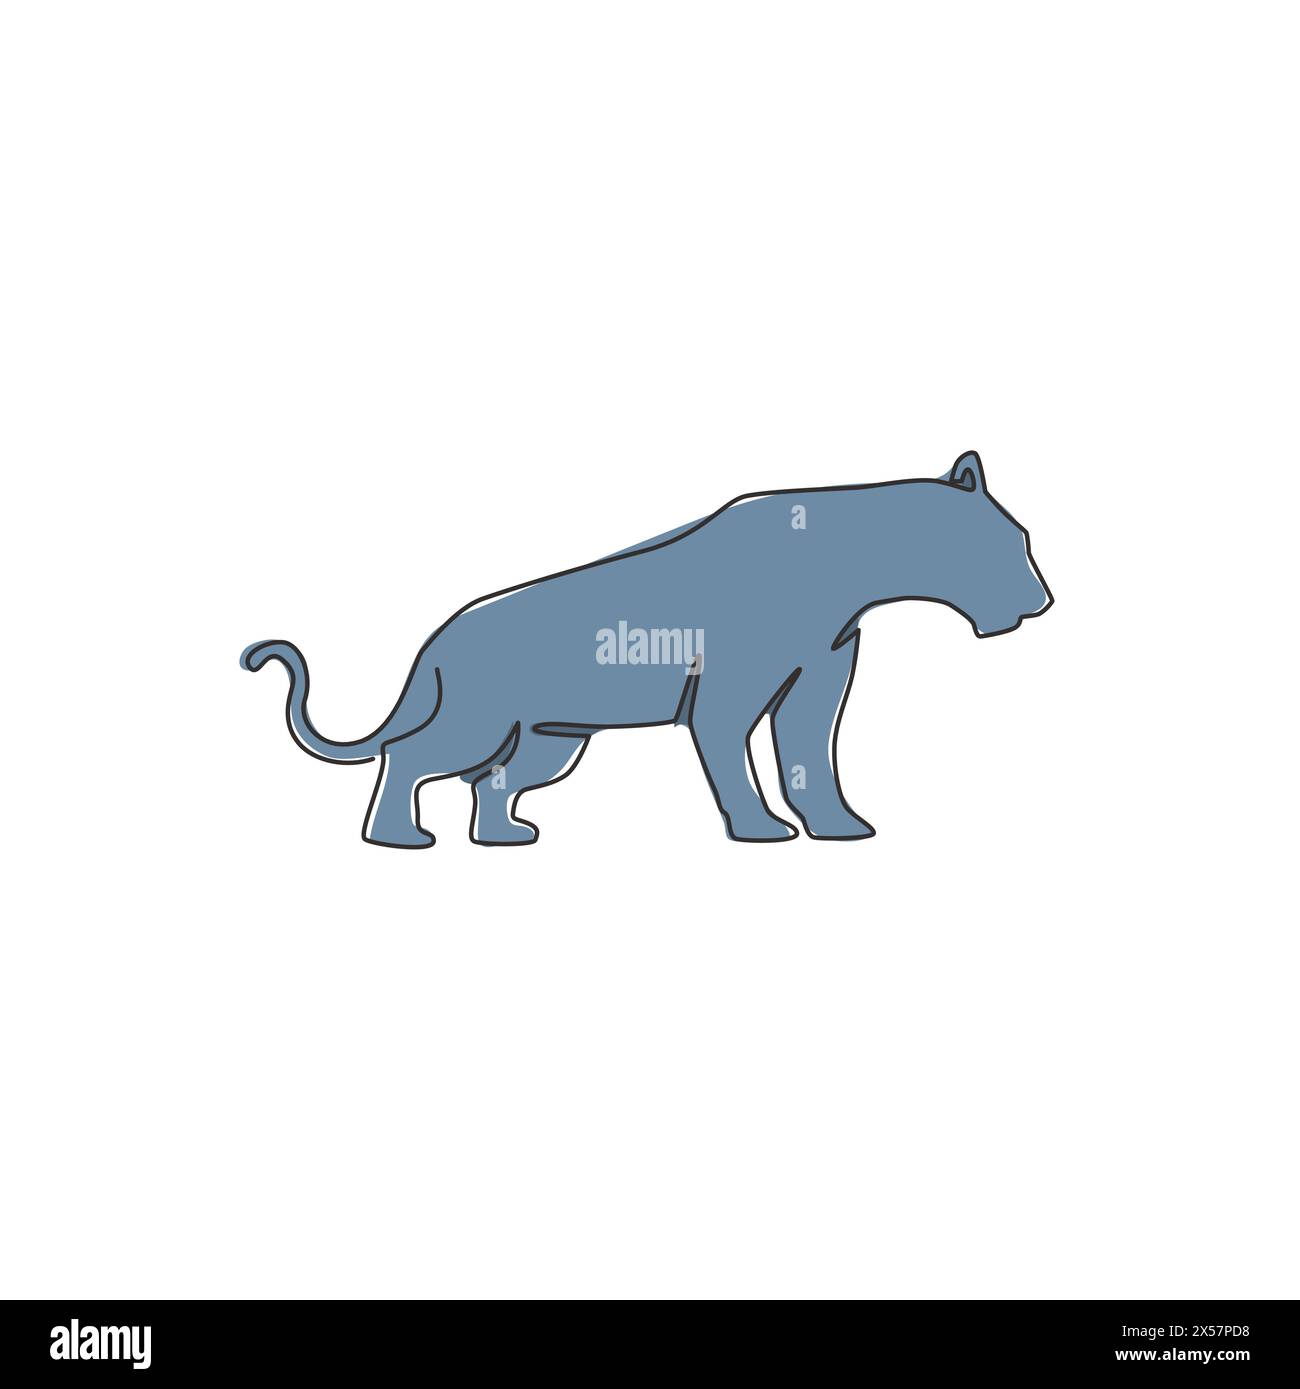 Dessin en ligne continue unique de léopard élégant pour l'identité du logo de l'équipe de chasseur. Concept de mascotte animal mammifère jaguar dangereux pour club de sport. Moderne Illustration de Vecteur